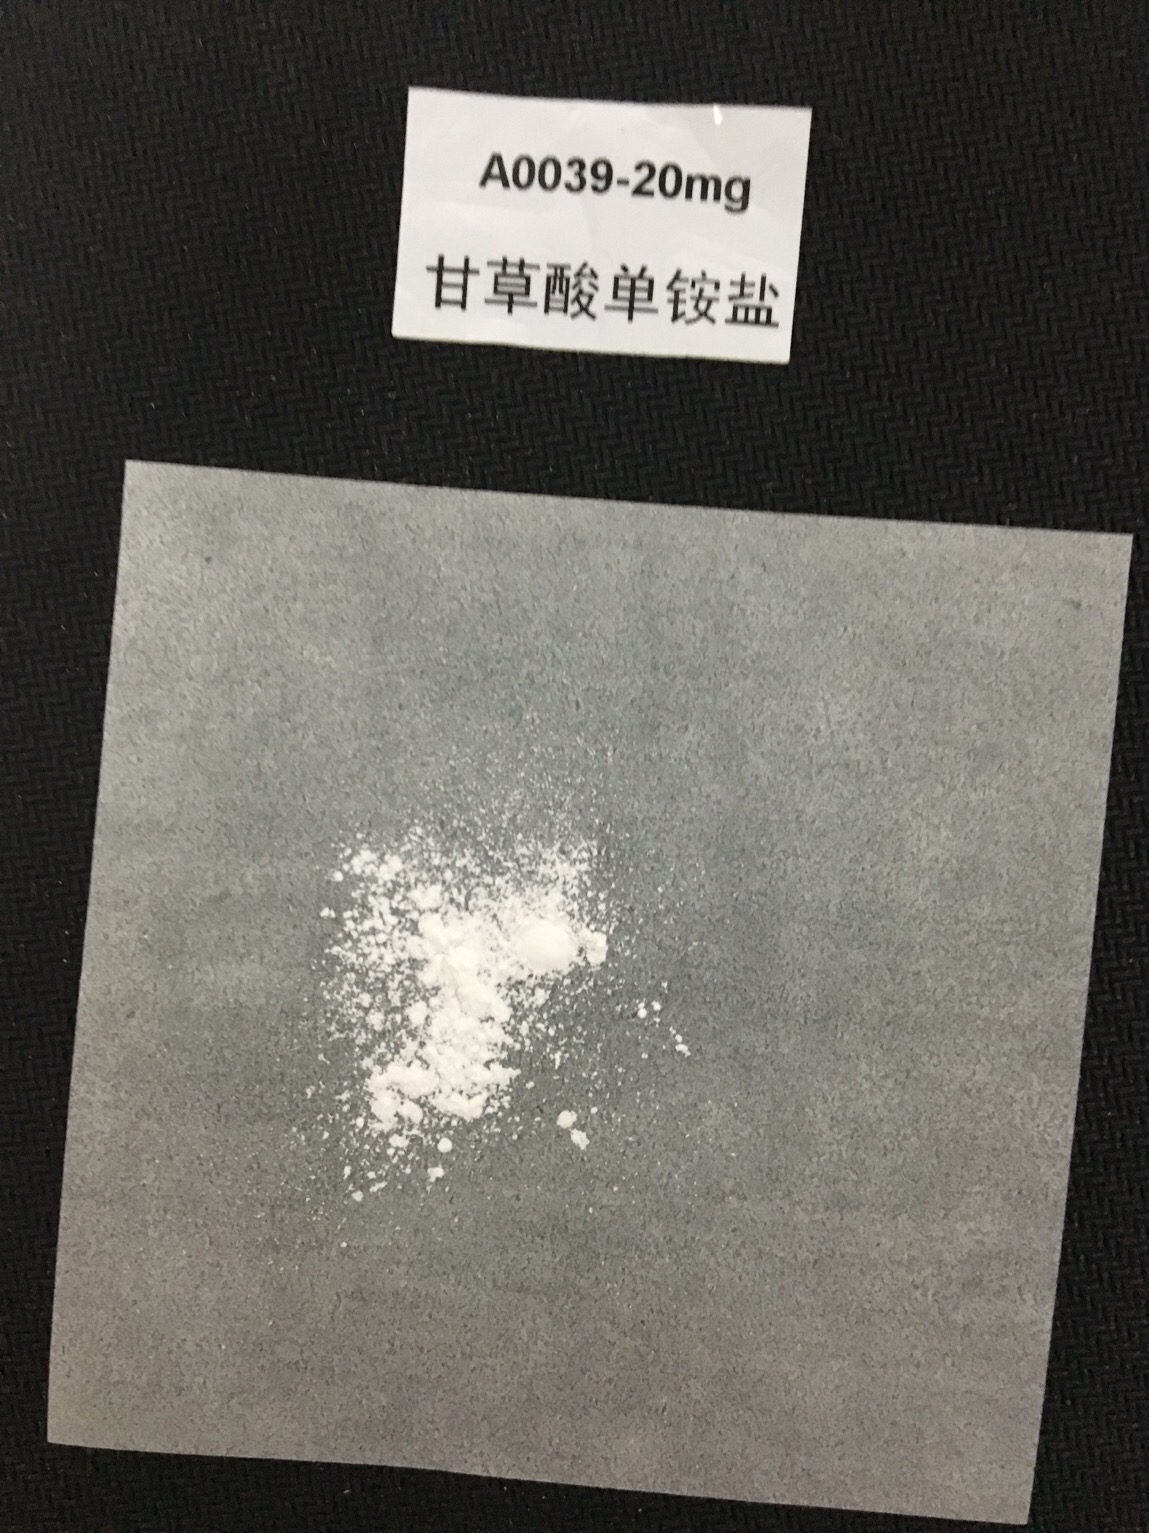 甘草酸单铵盐,Glycyrrhizic acid ammonium salt